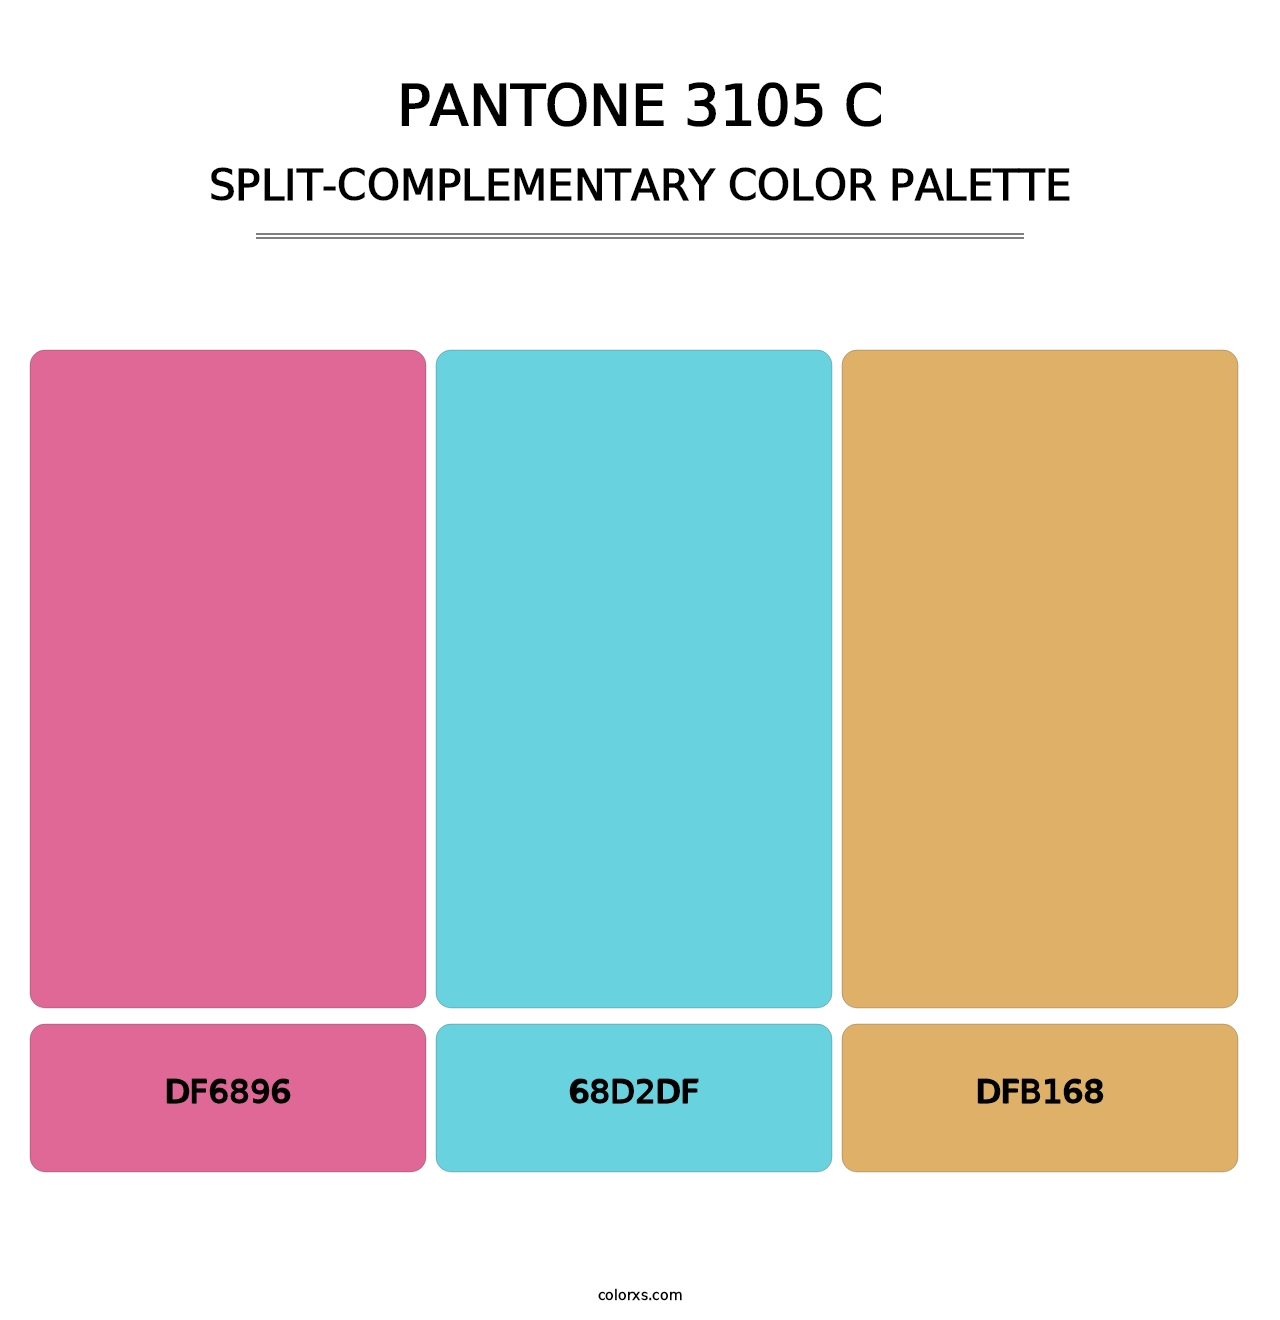 PANTONE 3105 C - Split-Complementary Color Palette